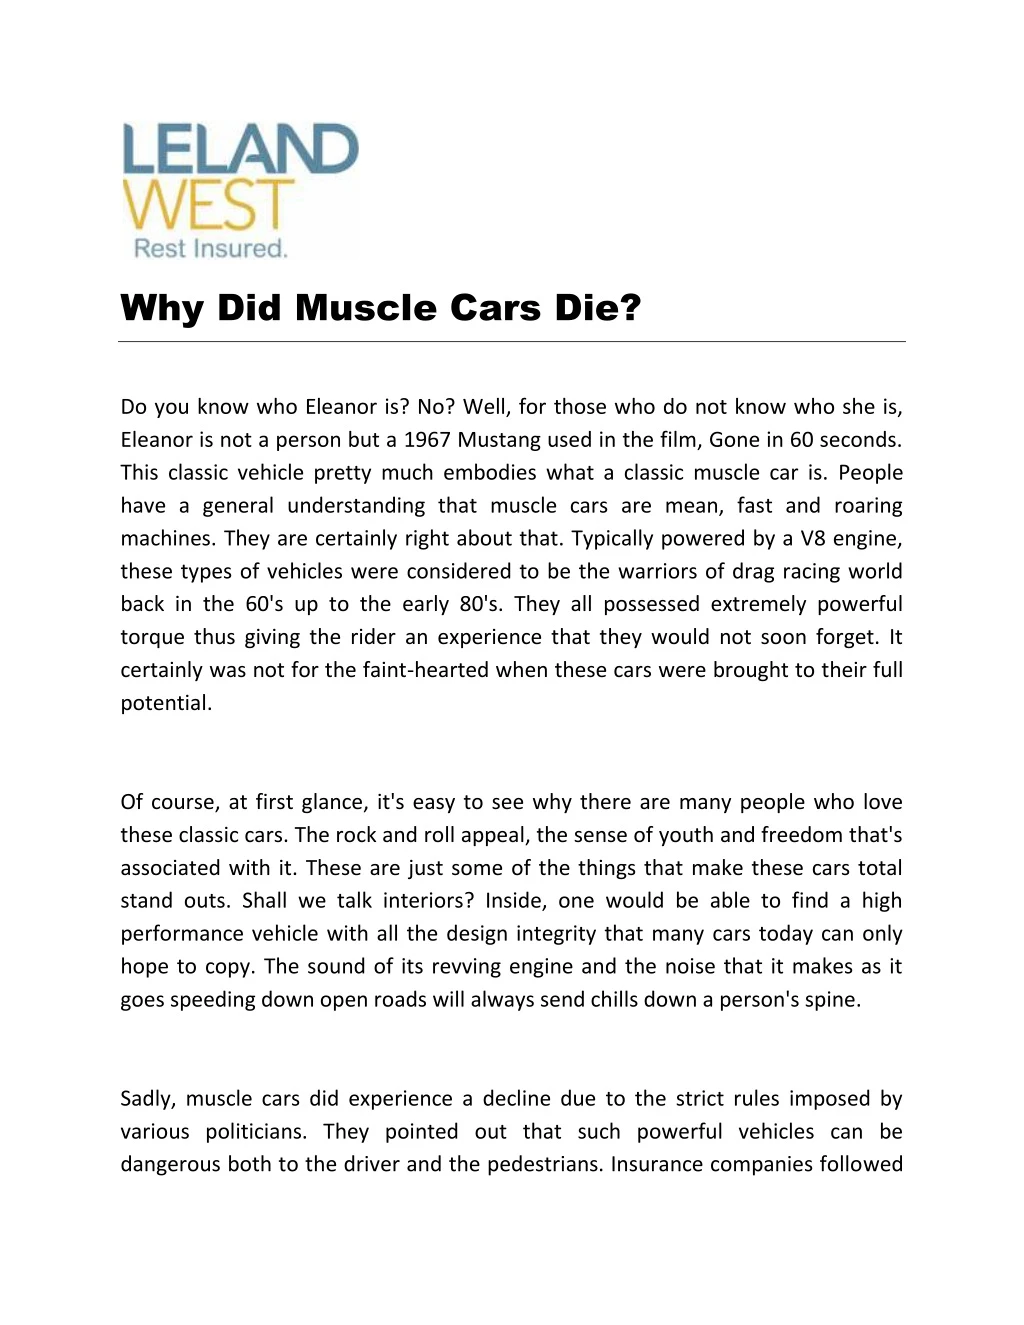 why did muscle cars die